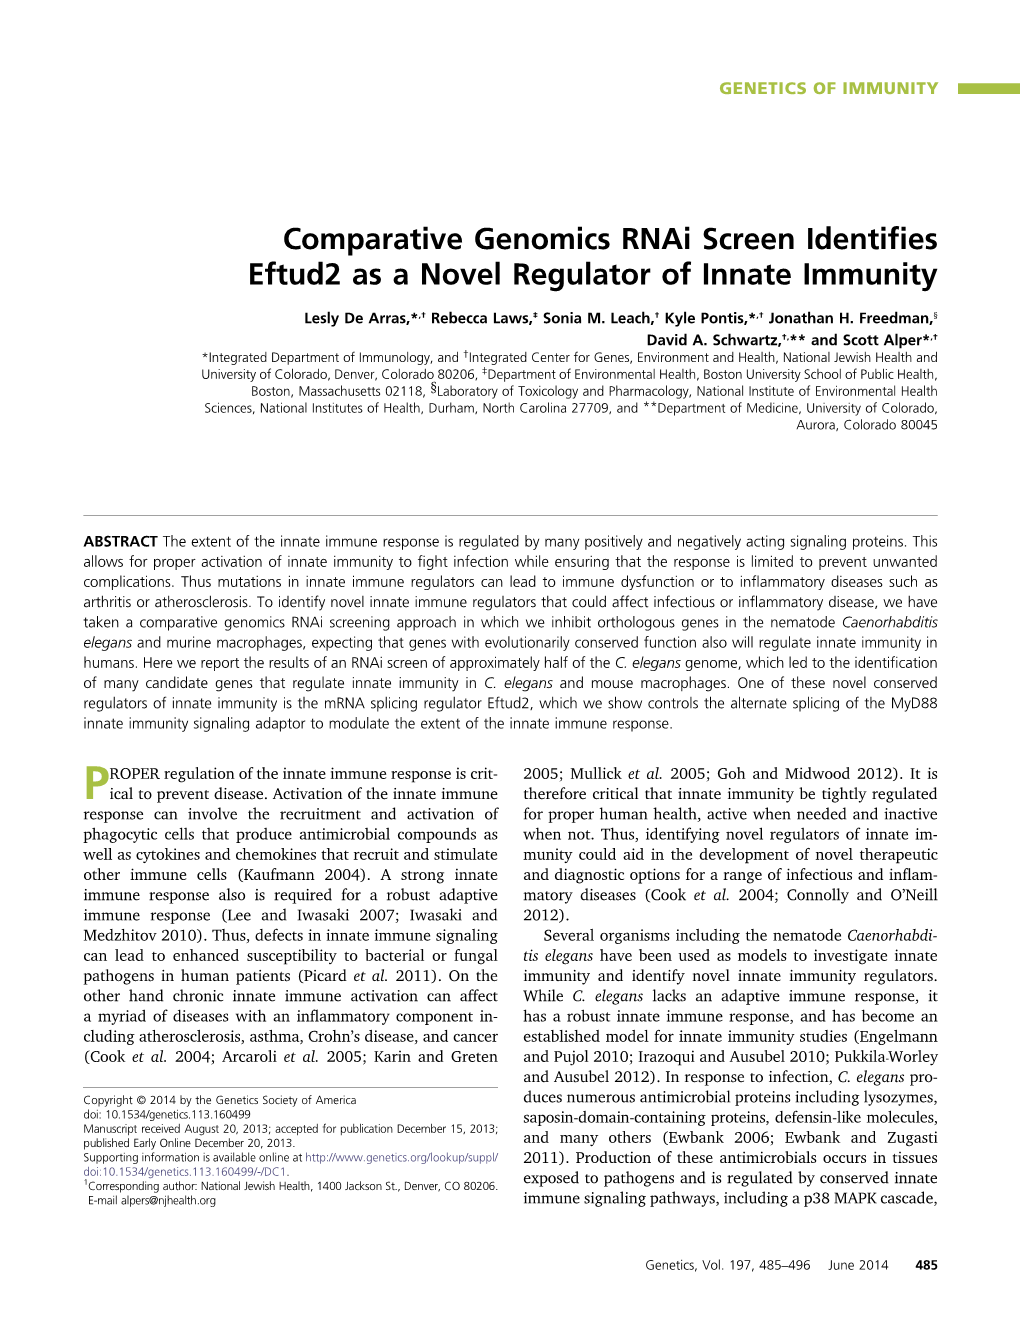 Comparative Genomics Rnai Screen Identifies Eftud2 As a Novel